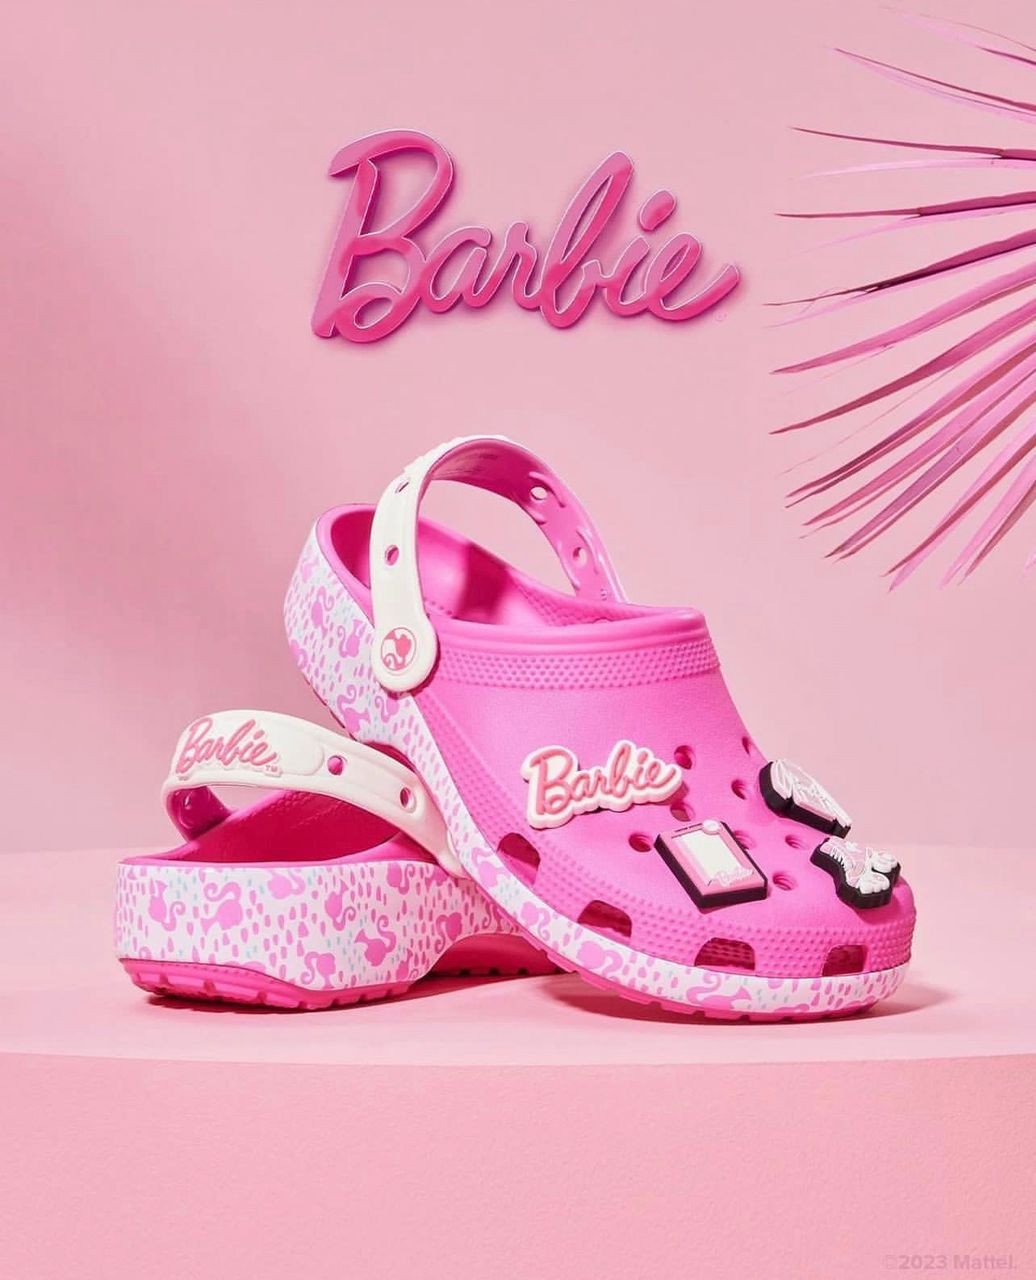 Crocs Barbie anrara yang menjadi kegilaan ketika ini - gambar Instagram